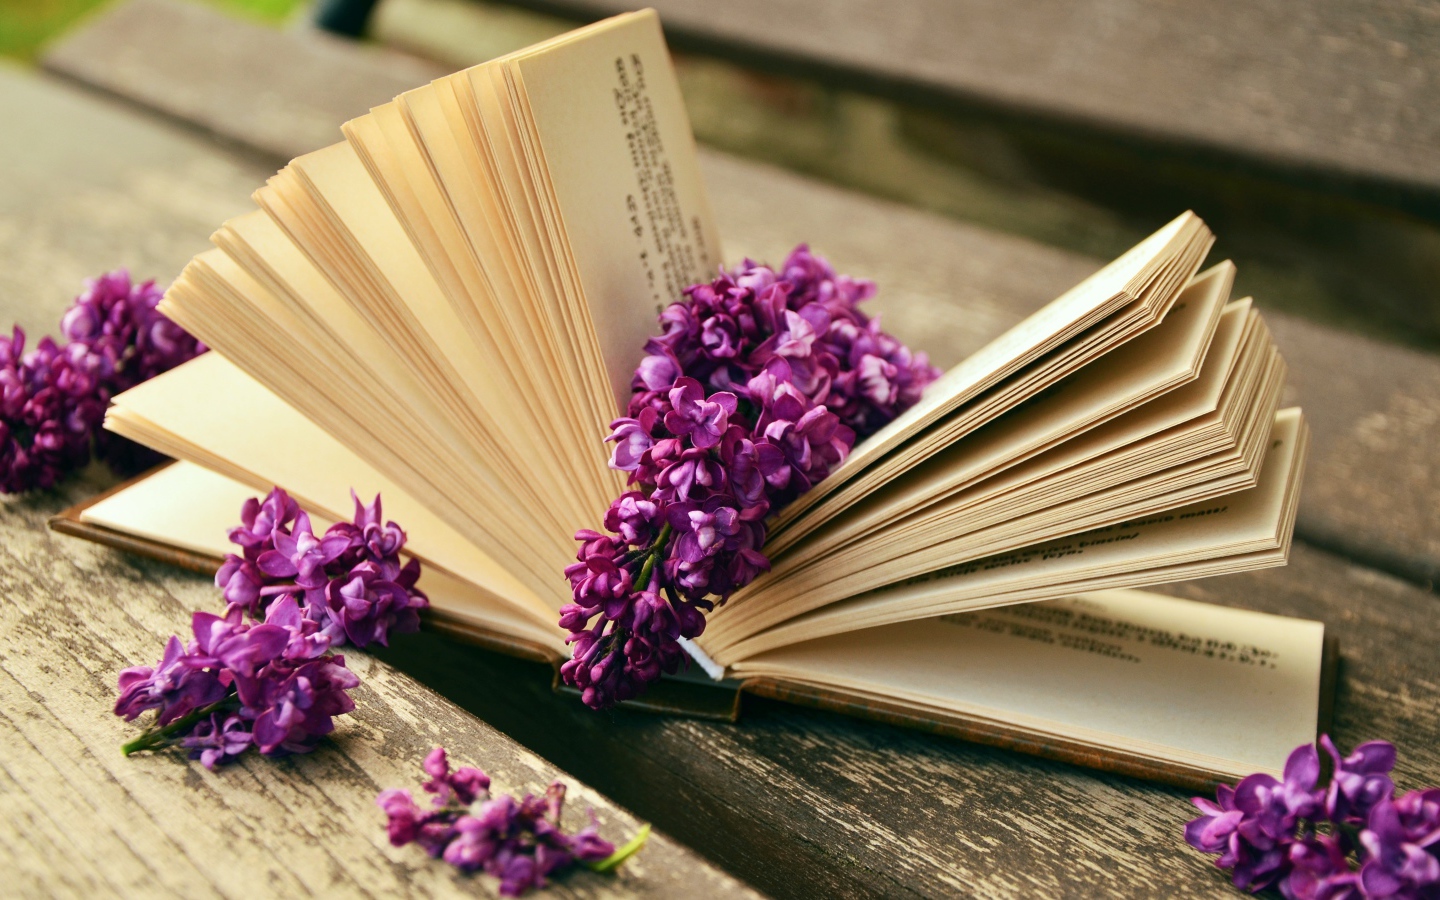 Цветы сирени лежат на книге на лавке 